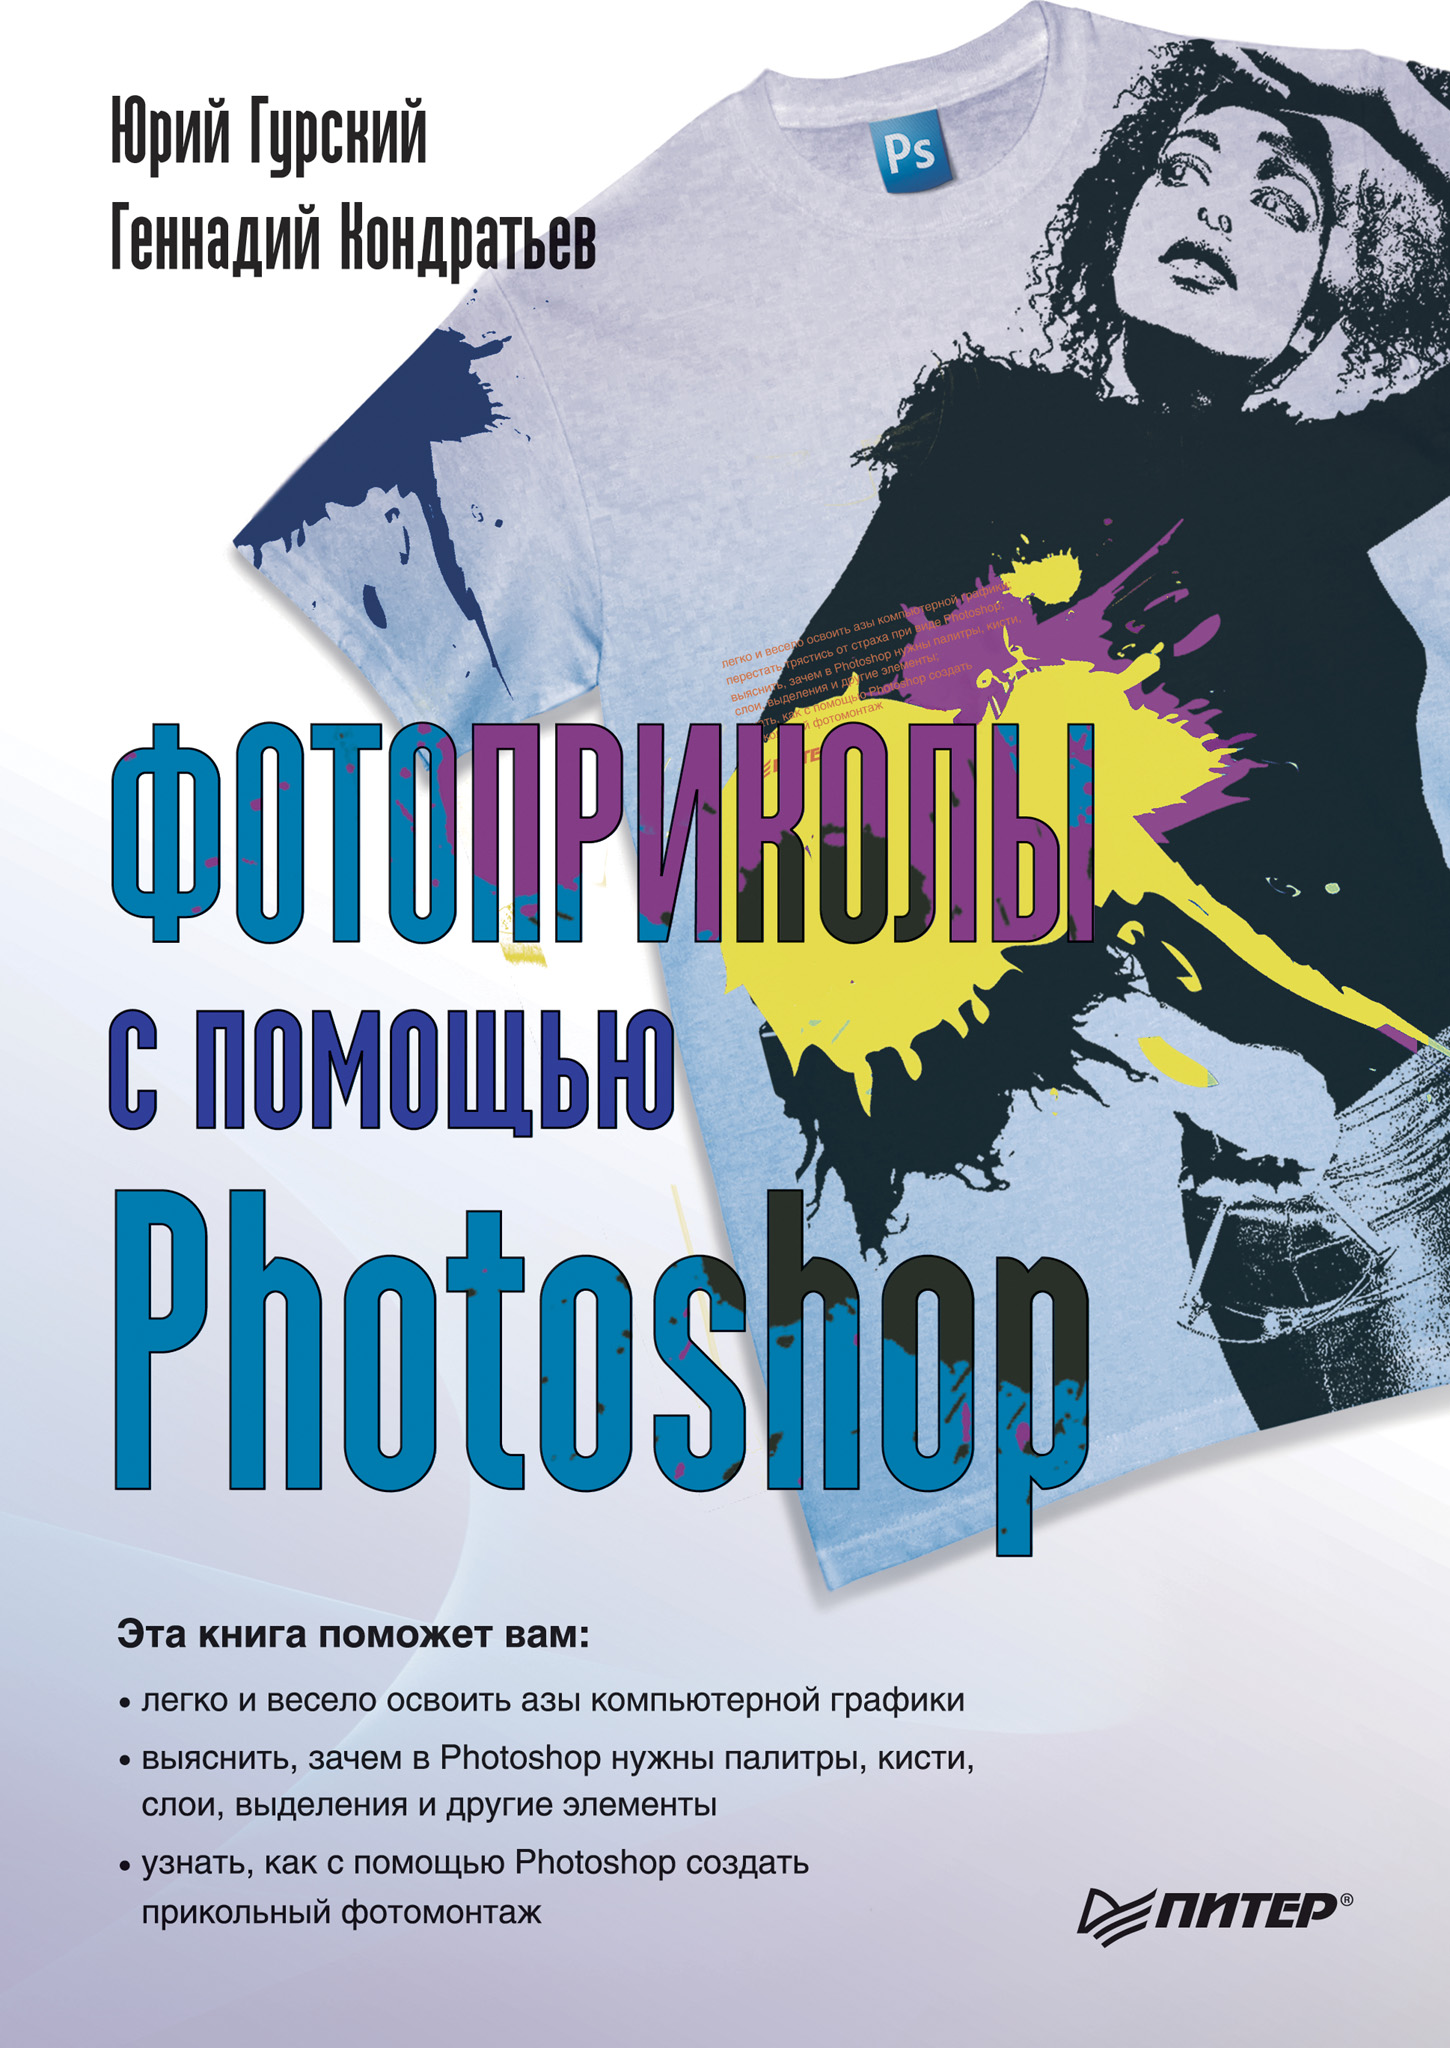 Книга  Фотоприколы с помощью Photoshop созданная Юрий Гурский, Геннадий Кондратьев может относится к жанру программы. Стоимость электронной книги Фотоприколы с помощью Photoshop с идентификатором 425732 составляет 79.00 руб.